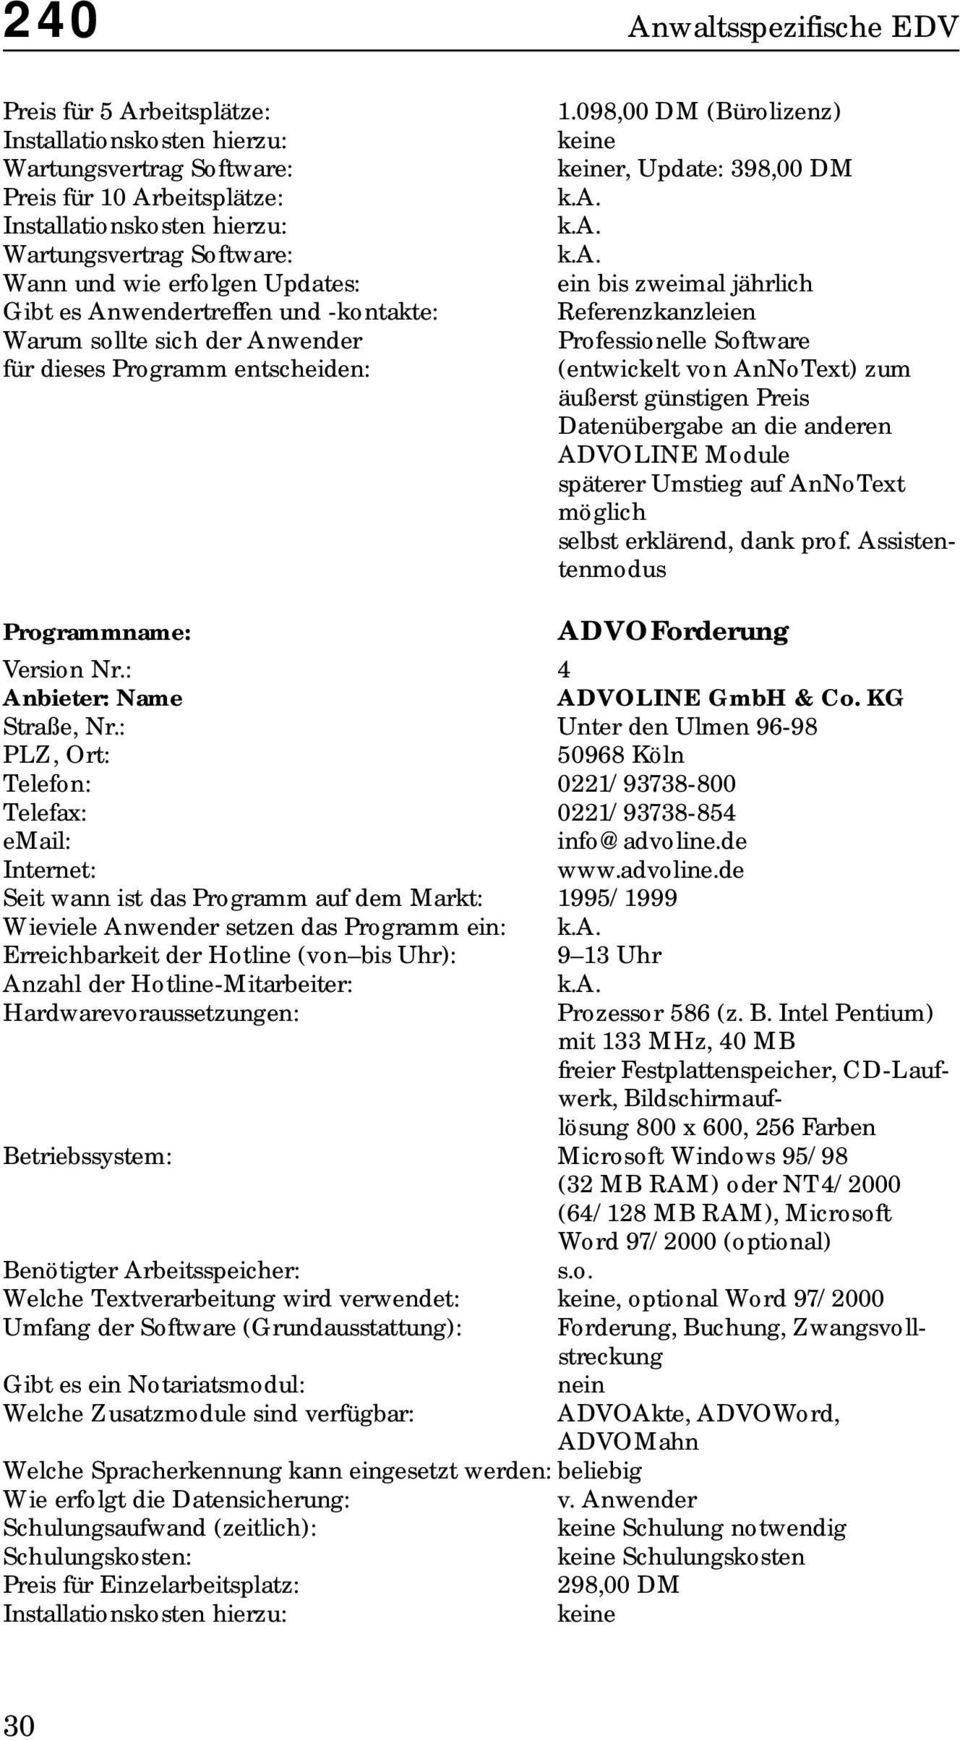 ADVOLINE Module späterer Umstieg auf AnNoText möglich selbst erklärend, dank prof. Assistentenmodus ADVOForderung Version Nr.: 4 ADVOLINE GmbH & Co. KG Straße, Nr.